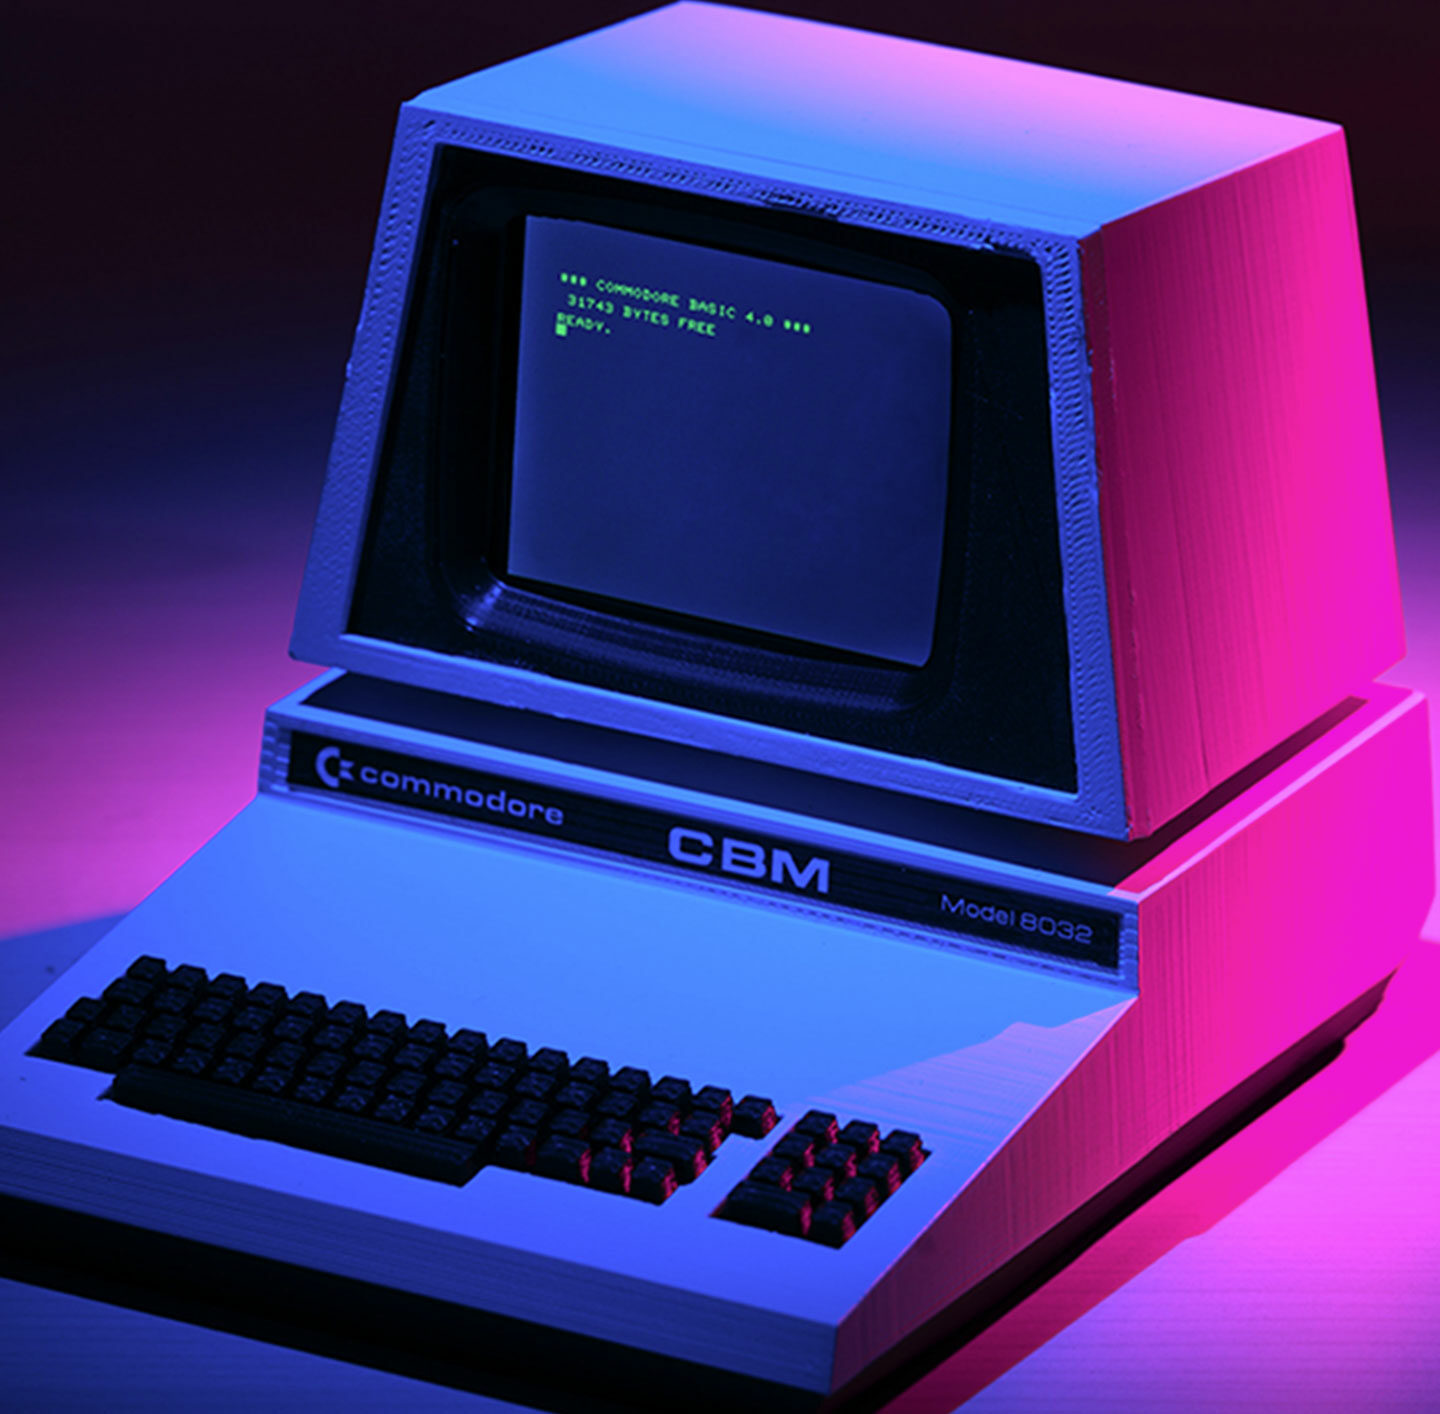 Bild eines CBM Commodore im farbigen Licht